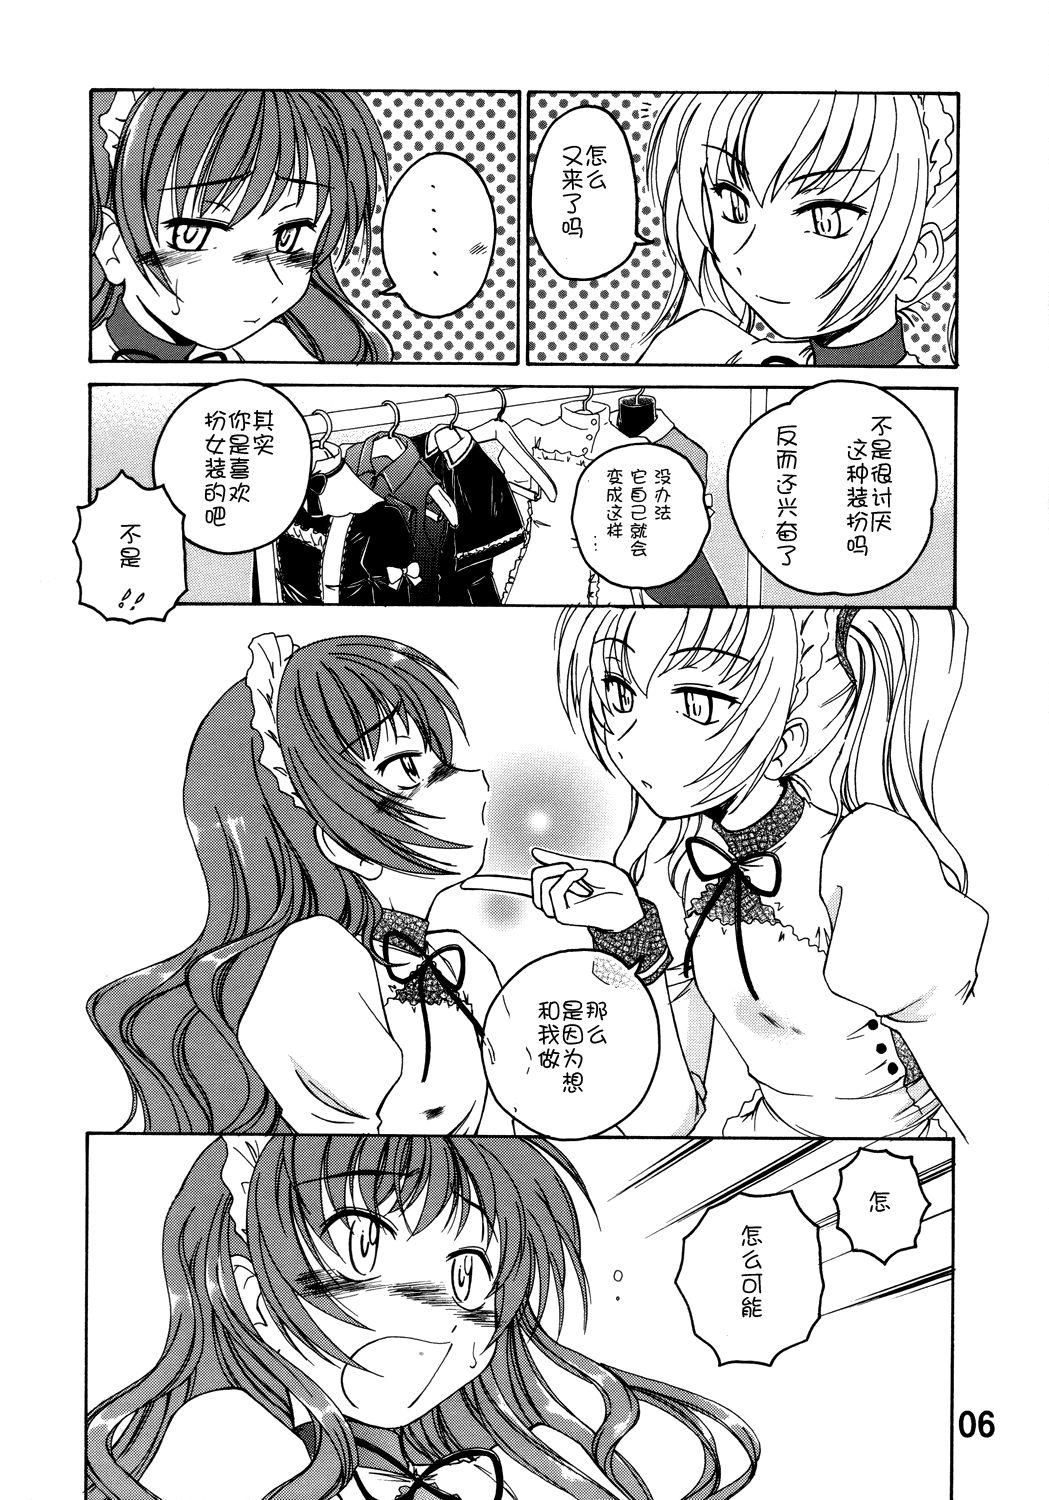 Big Natural Tits Manga Sangyou Haikibutsu 11 - Comic Industrial Wastes 11 - Princess princess Gay Uniform - Page 5